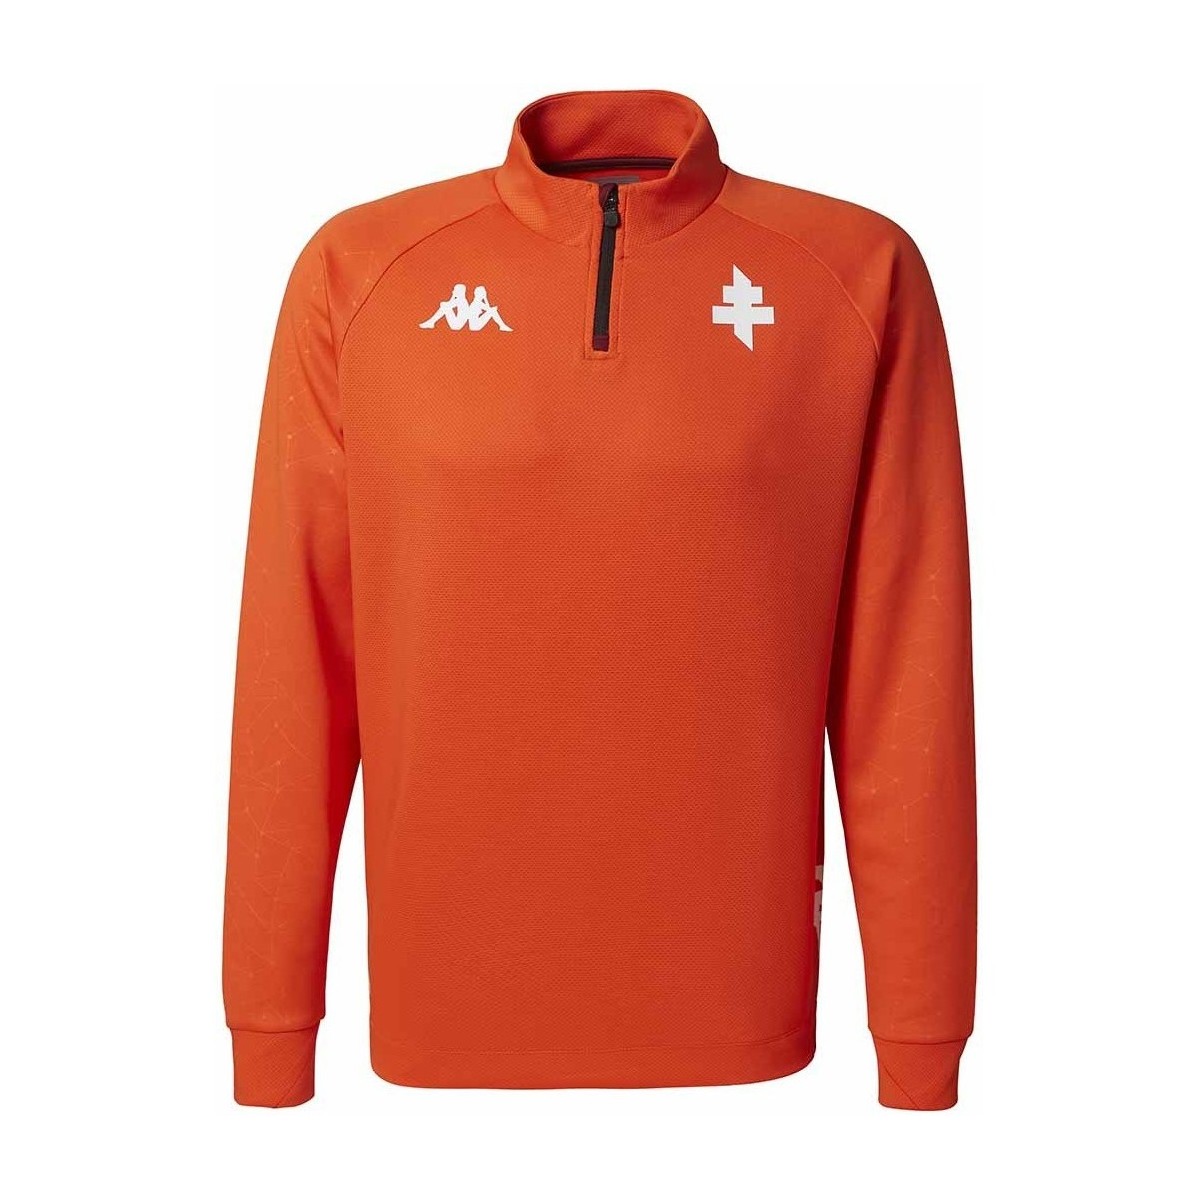 Kappa Orange Sweatshirt Ablas Pro 6 FC Metz 22/23 seTOV